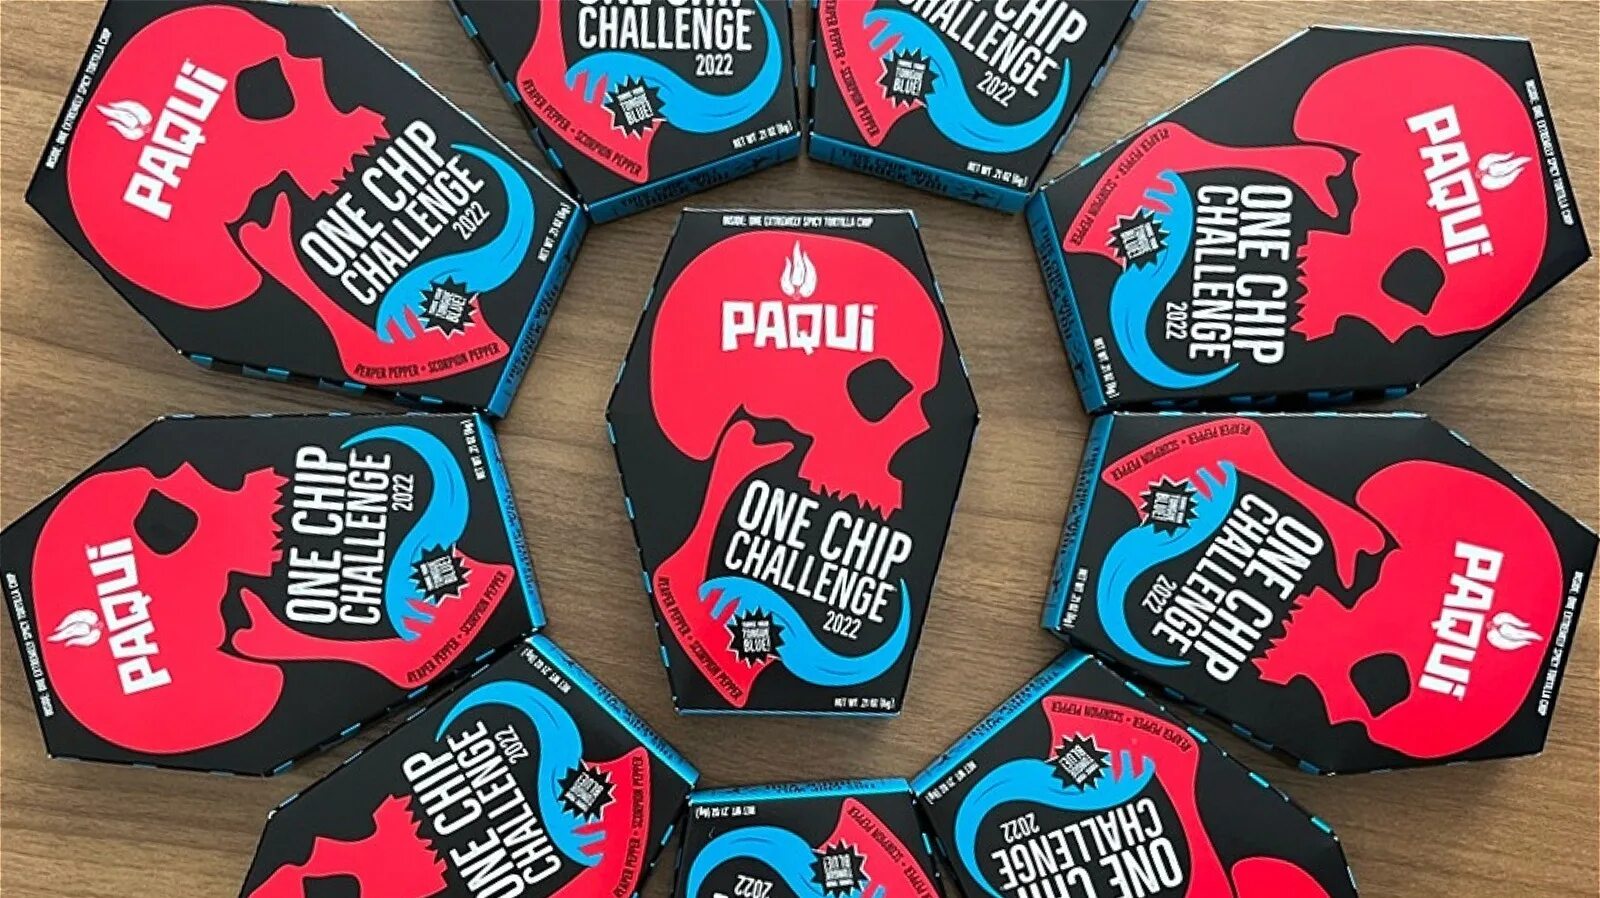 Paqui one chip. Paqui чипсы. Чипс ЧЕЛЛЕНДЖ. Paqui one Chip Challenge. One Chips ЧЕЛЛЕНДЖ.